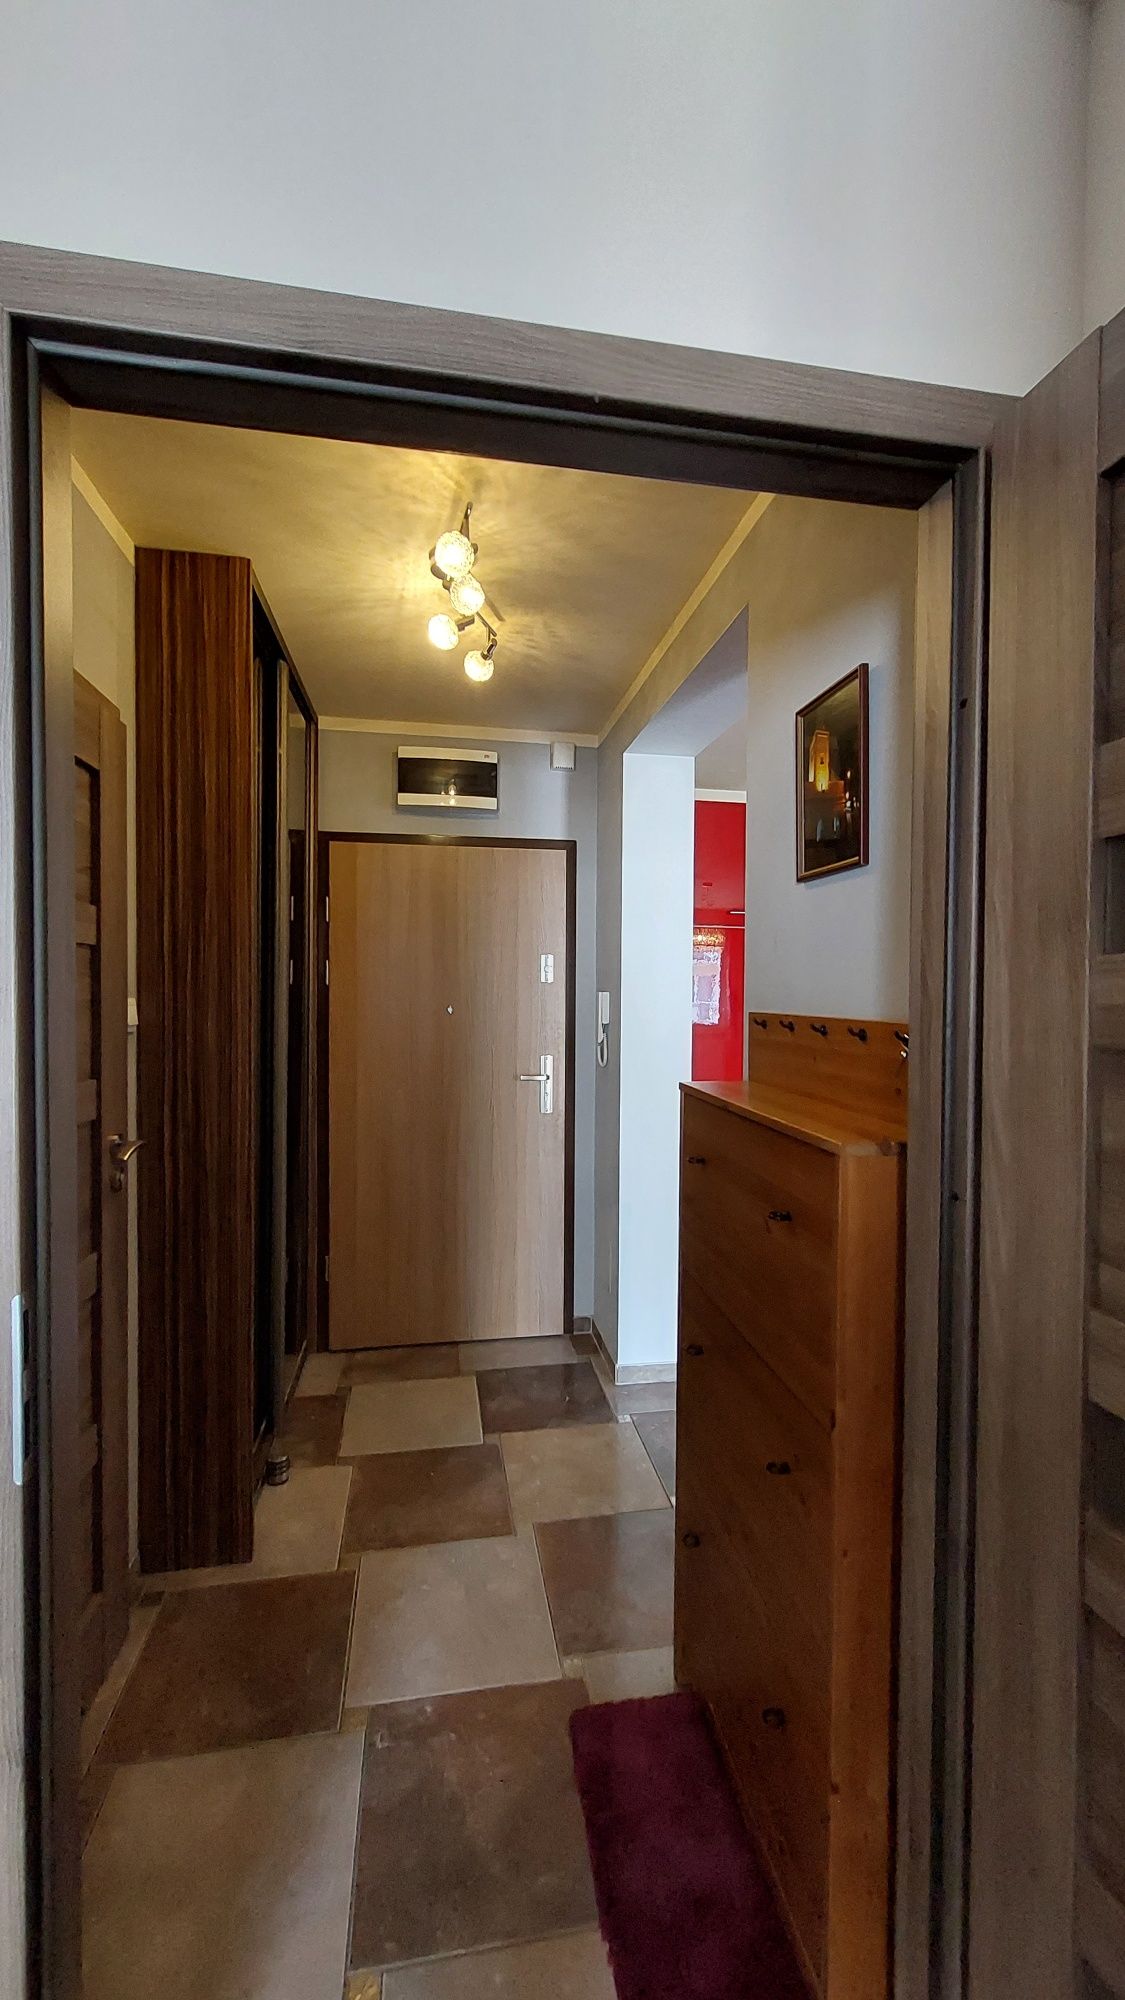 Dobrze wyposażone mieszkanie 48 m2 do wynajęcia na ulicy Obywatelskiej